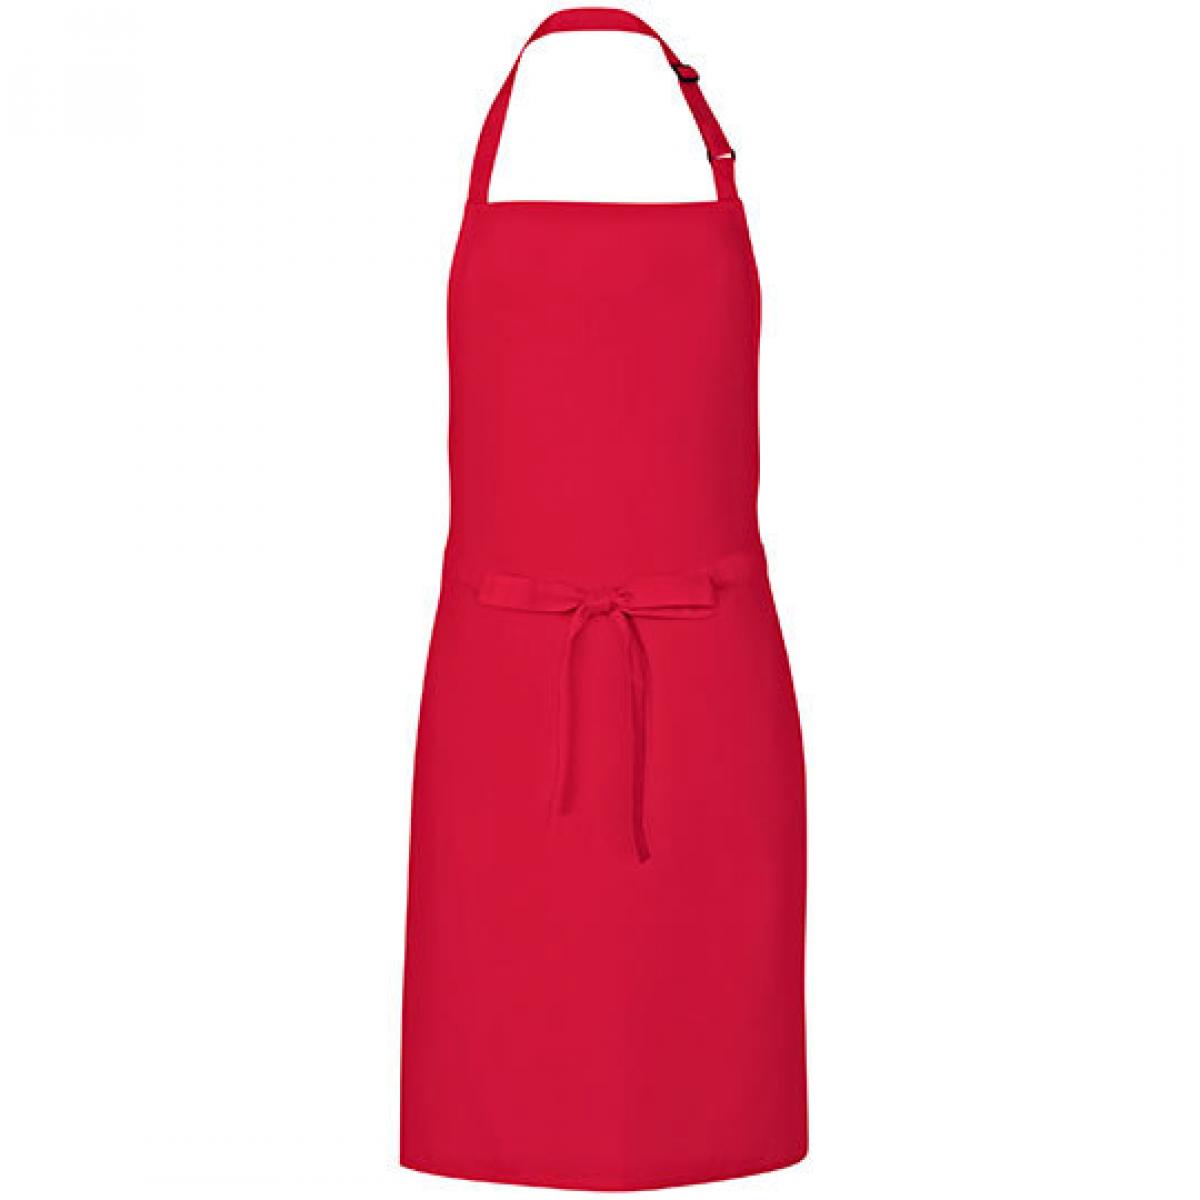 Hersteller: Link Kitchen Wear Herstellernummer: MS8572 Artikelbezeichnung: Multi Apron - 72 x 85 cm - Waschbar bis 60 °C Farbe: Strawberry Red (ca. Pantone 186)